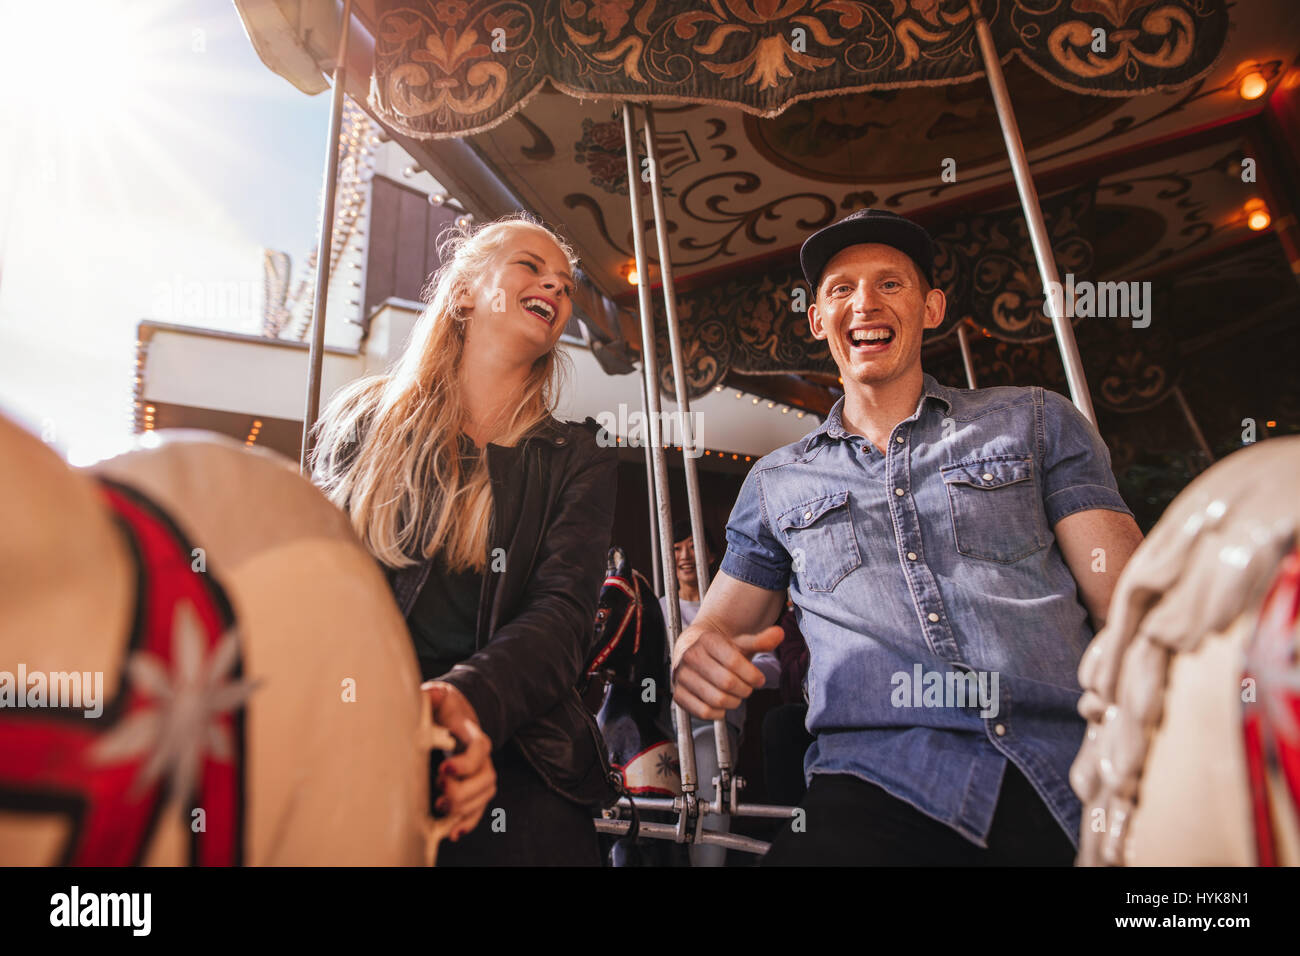 Smiling friends sur amusement park carousel. Jeune couple sur carousel ride. Banque D'Images